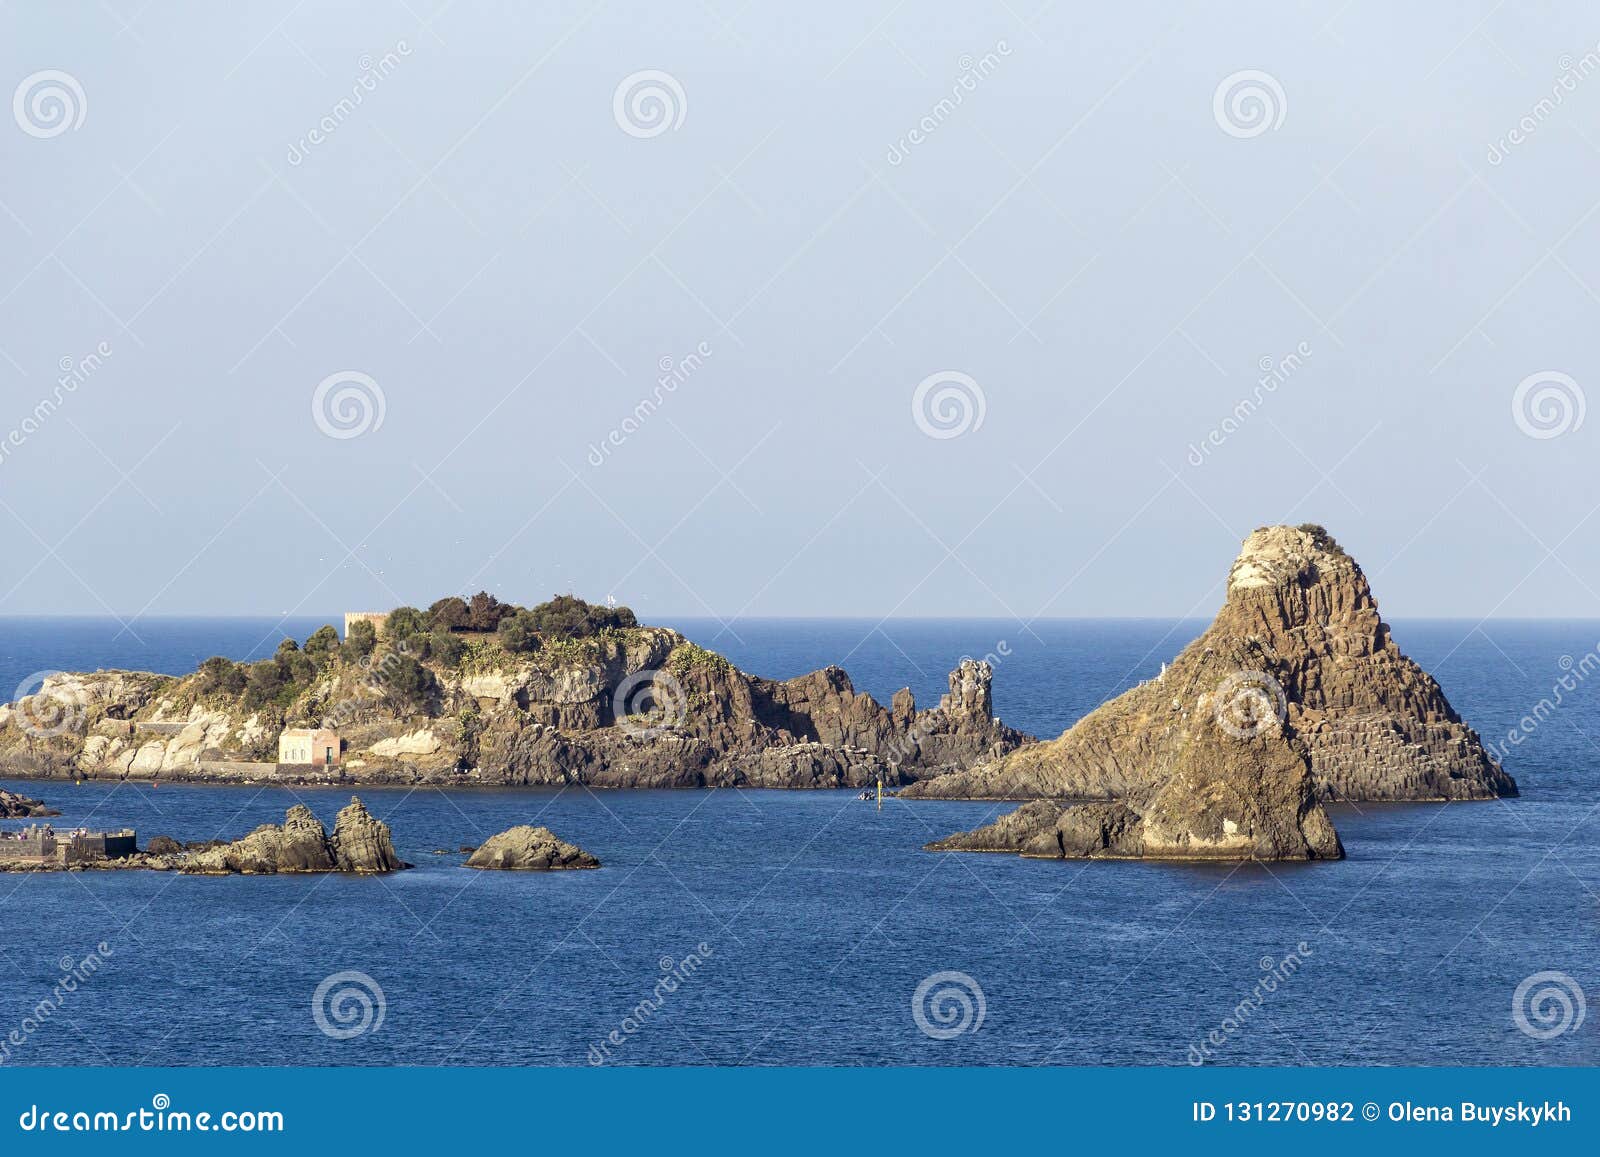 cyclopean isles in aci trezza, catania, sicily, italy